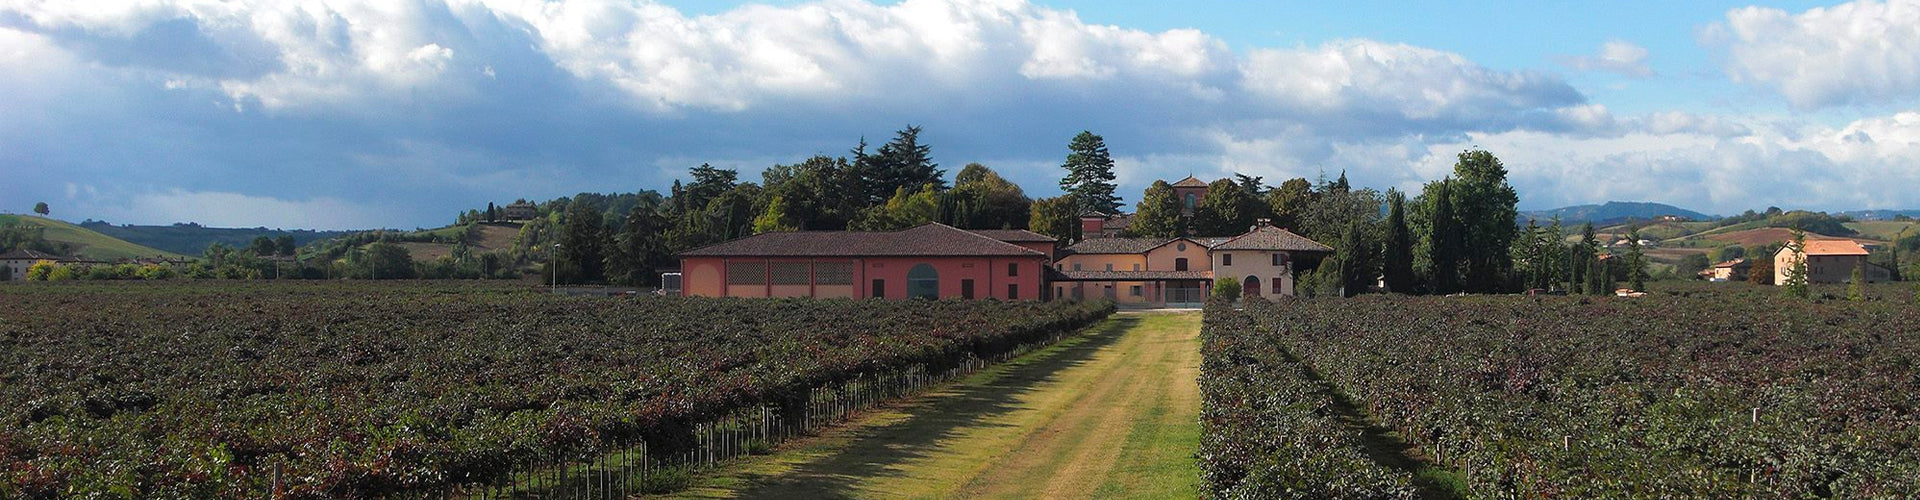 Cleto Chiarli Winery & Vineyards in Emilia-Romagna